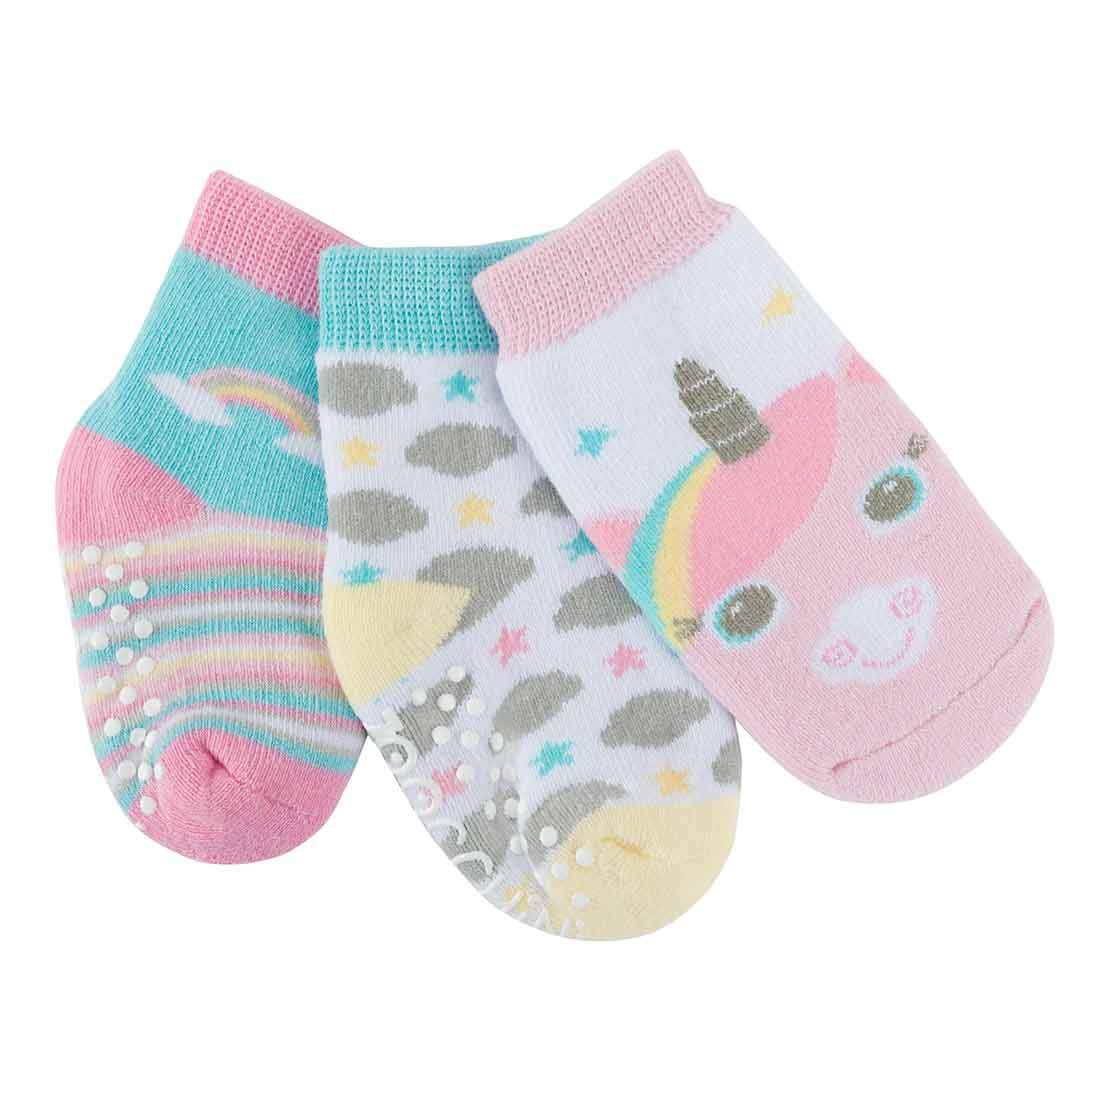 Baby/Toddler Terry Socks Set (3-pk) - Allie the Alicorn